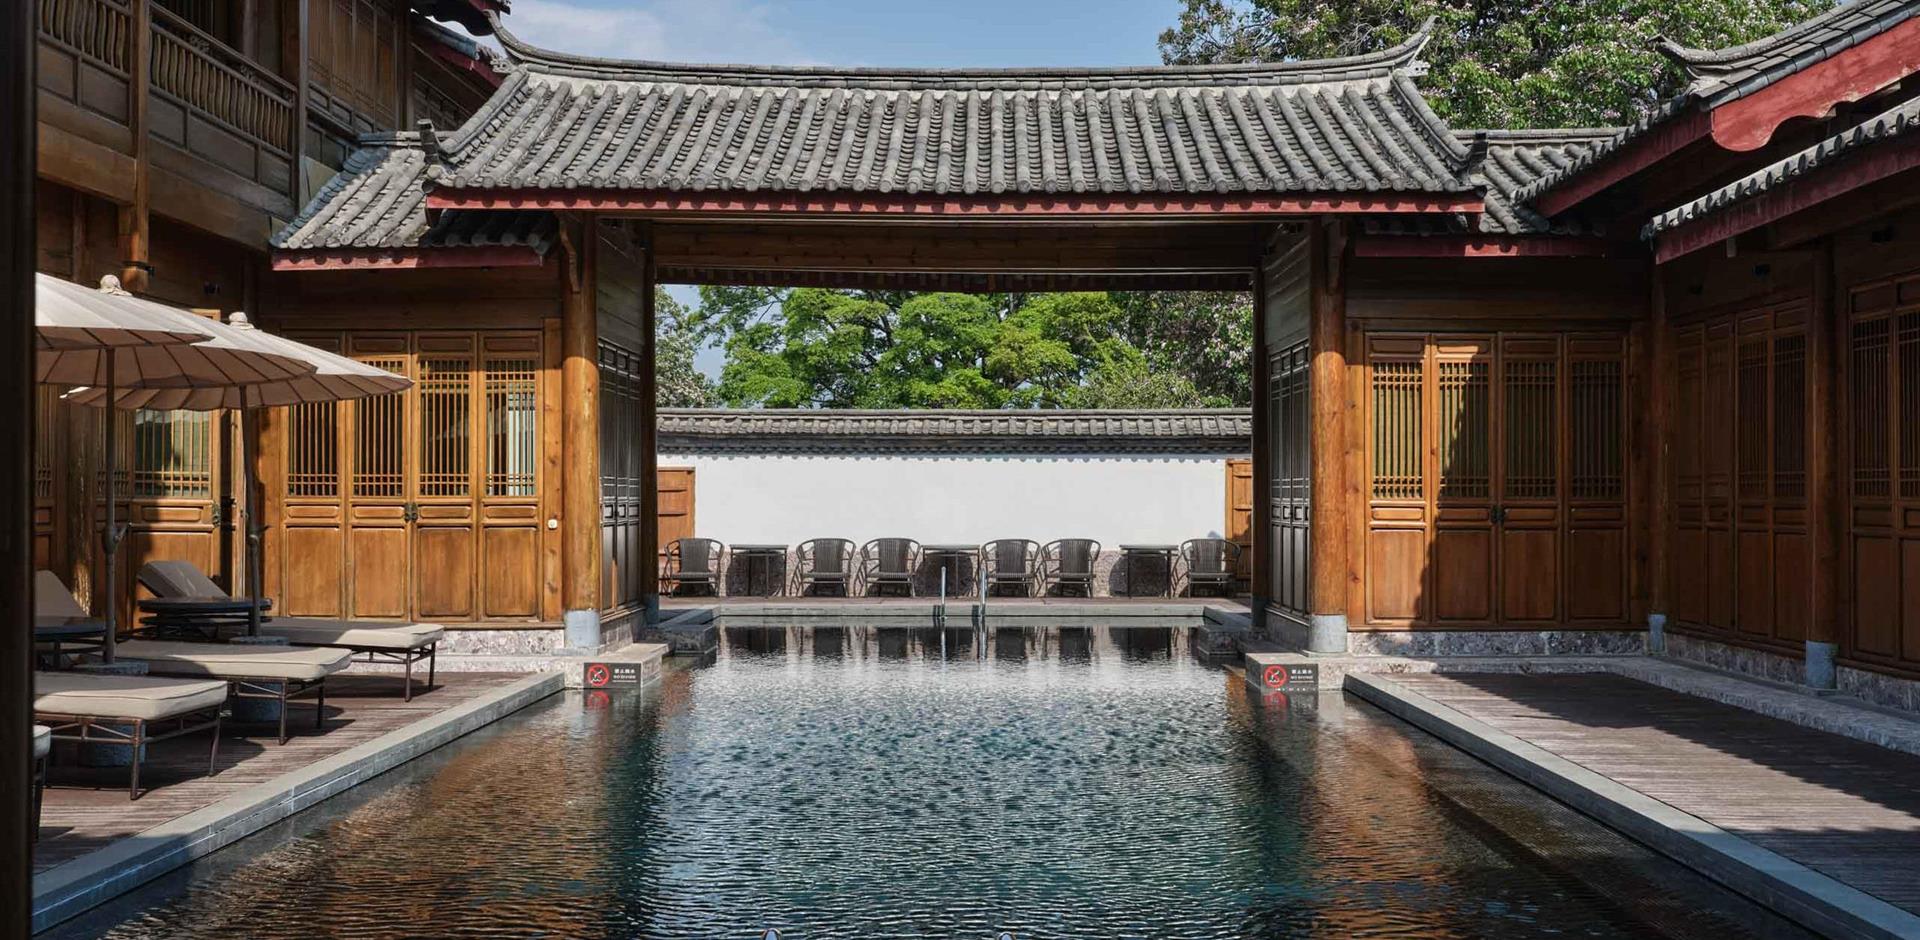 Swimming pool, Amandayan, Lijiang, China